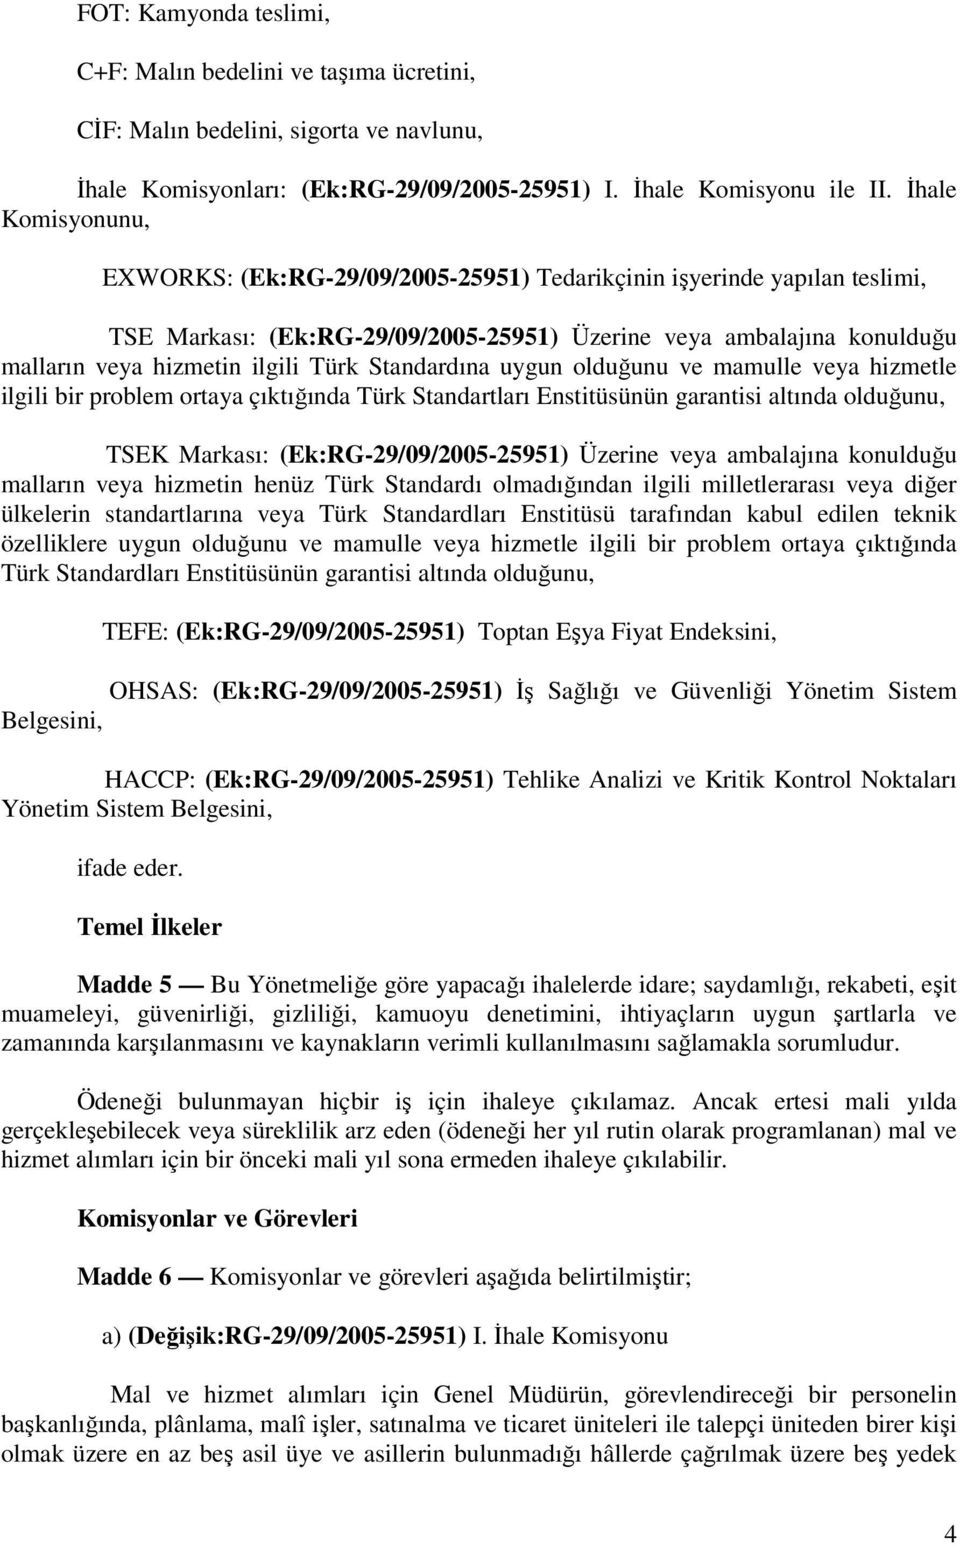 Standardına uygun olduğunu ve mamulle veya hizmetle ilgili bir problem ortaya çıktığında Türk Standartları Enstitüsünün garantisi altında olduğunu, TSEK Markası: (Ek:RG-29/09/2005-25951) Üzerine veya